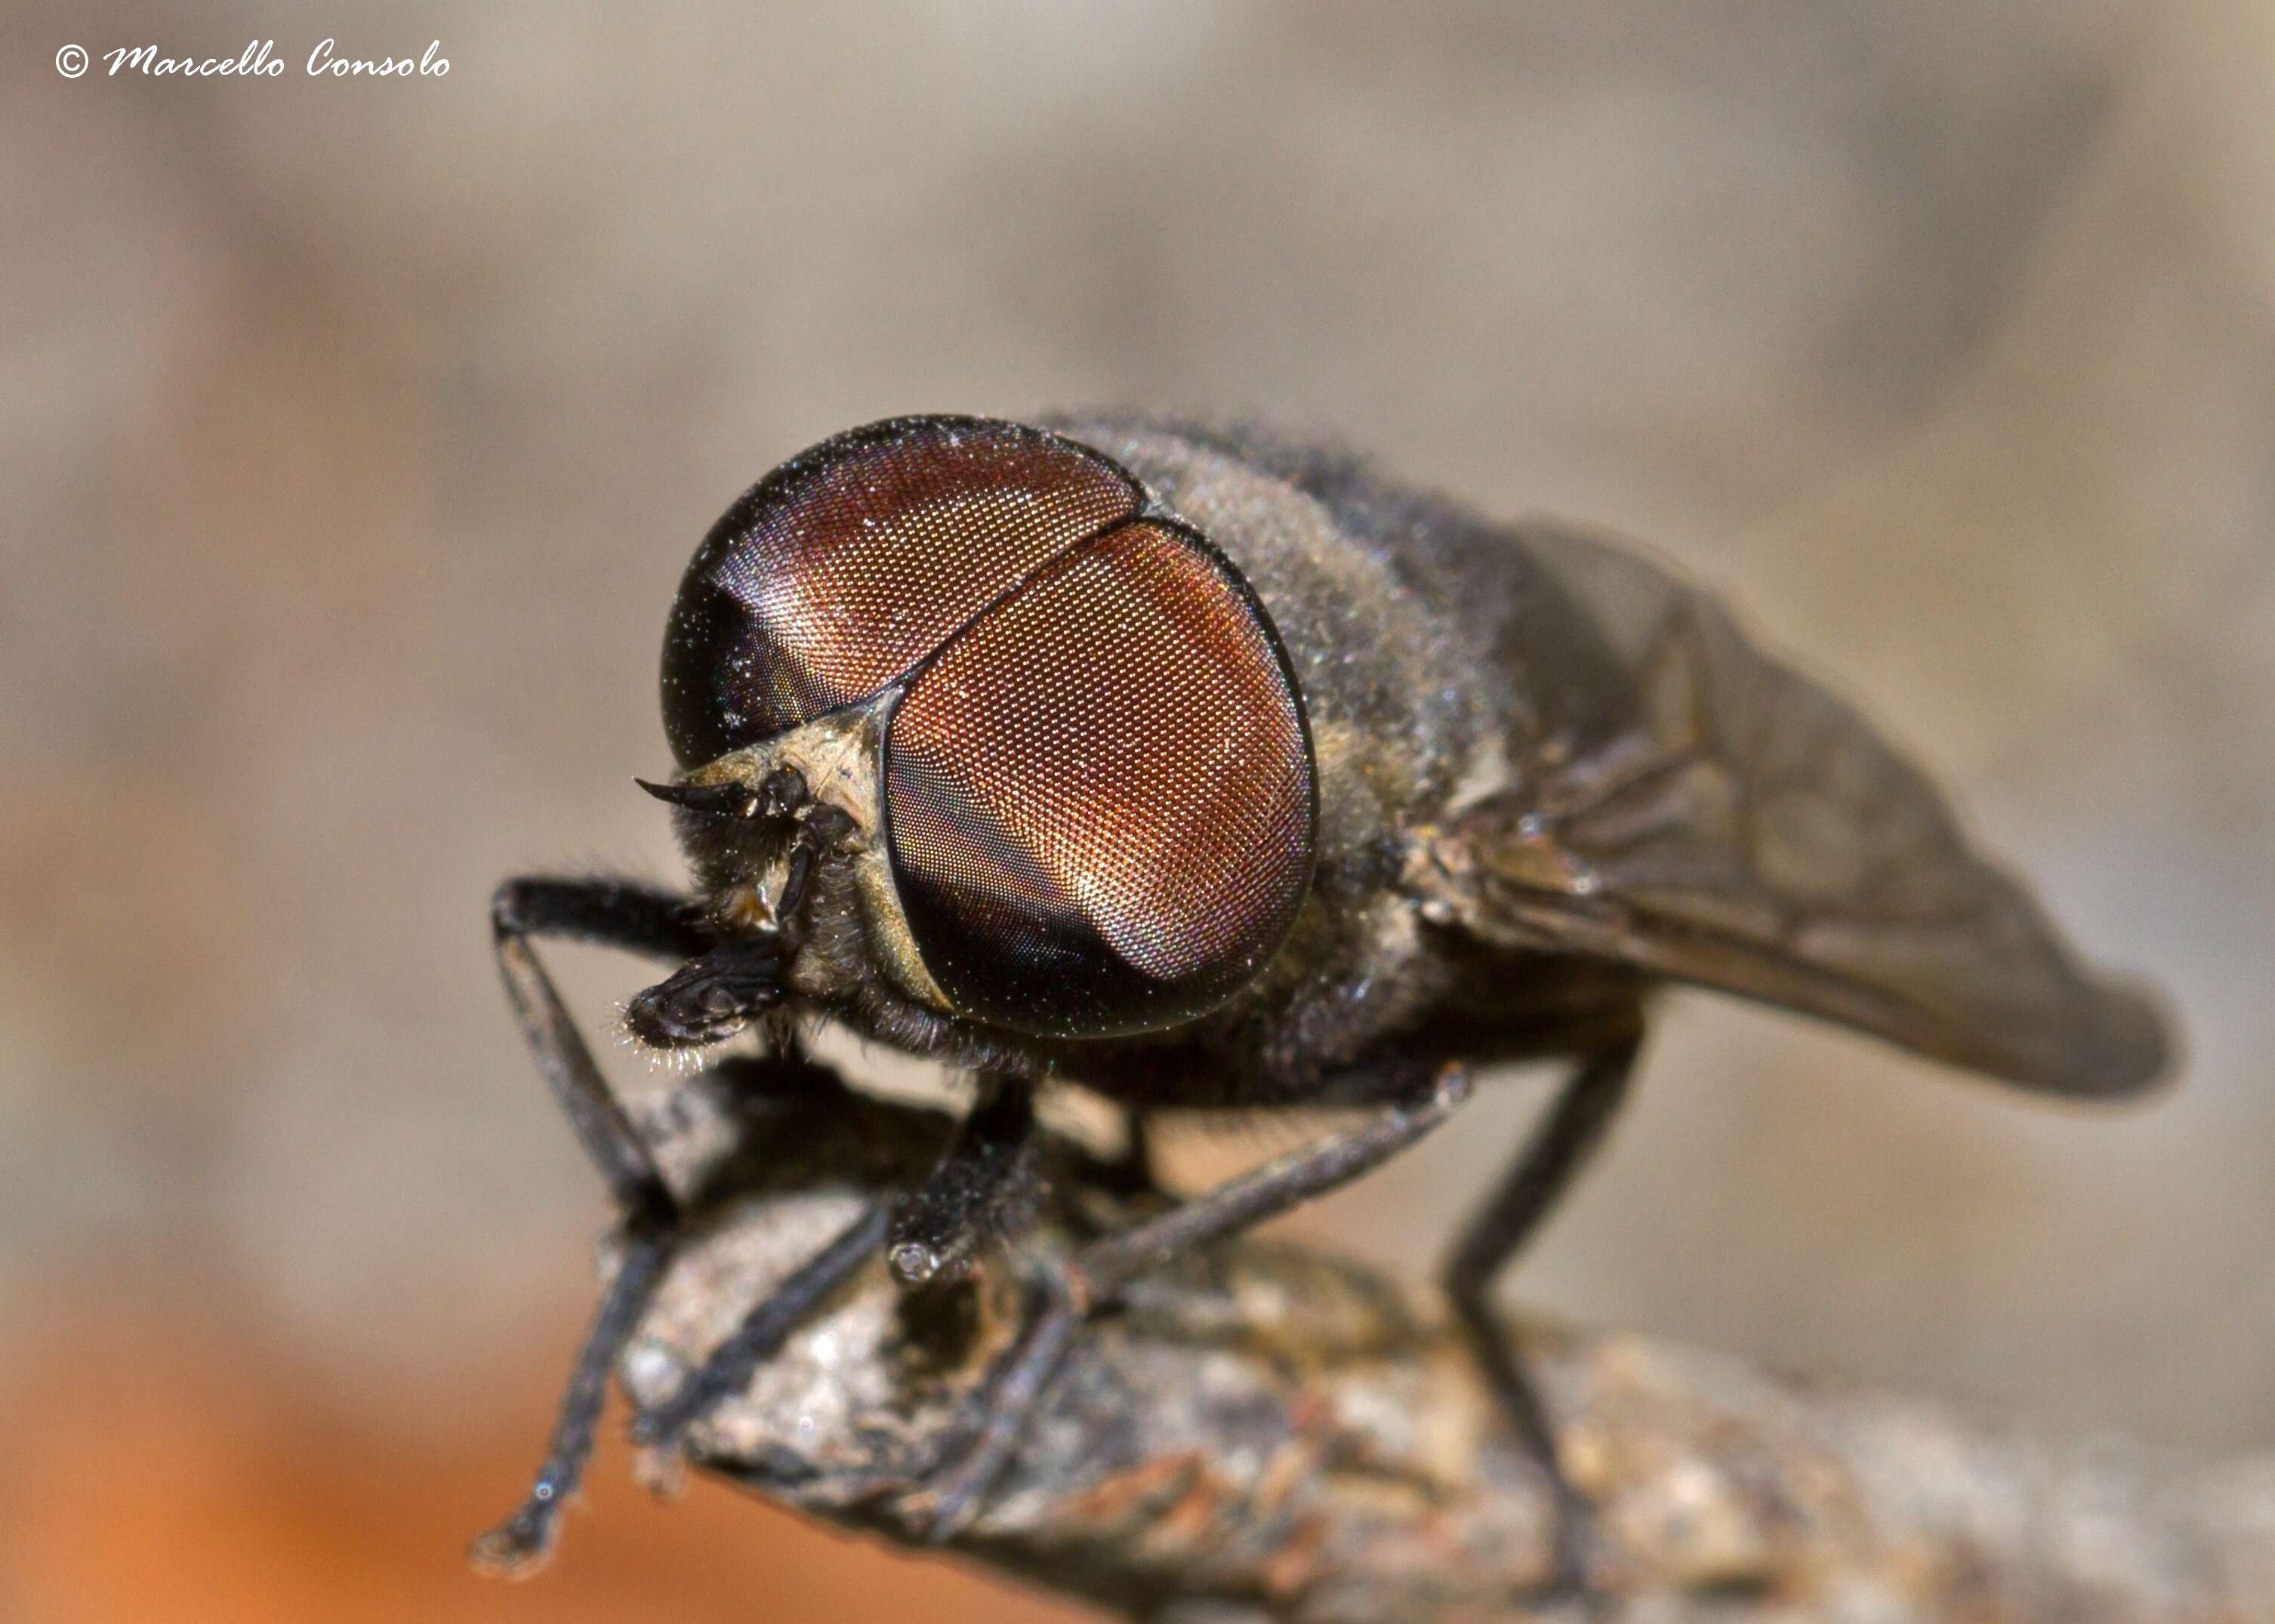 dark giant horsefly - Encyclopedia of Life